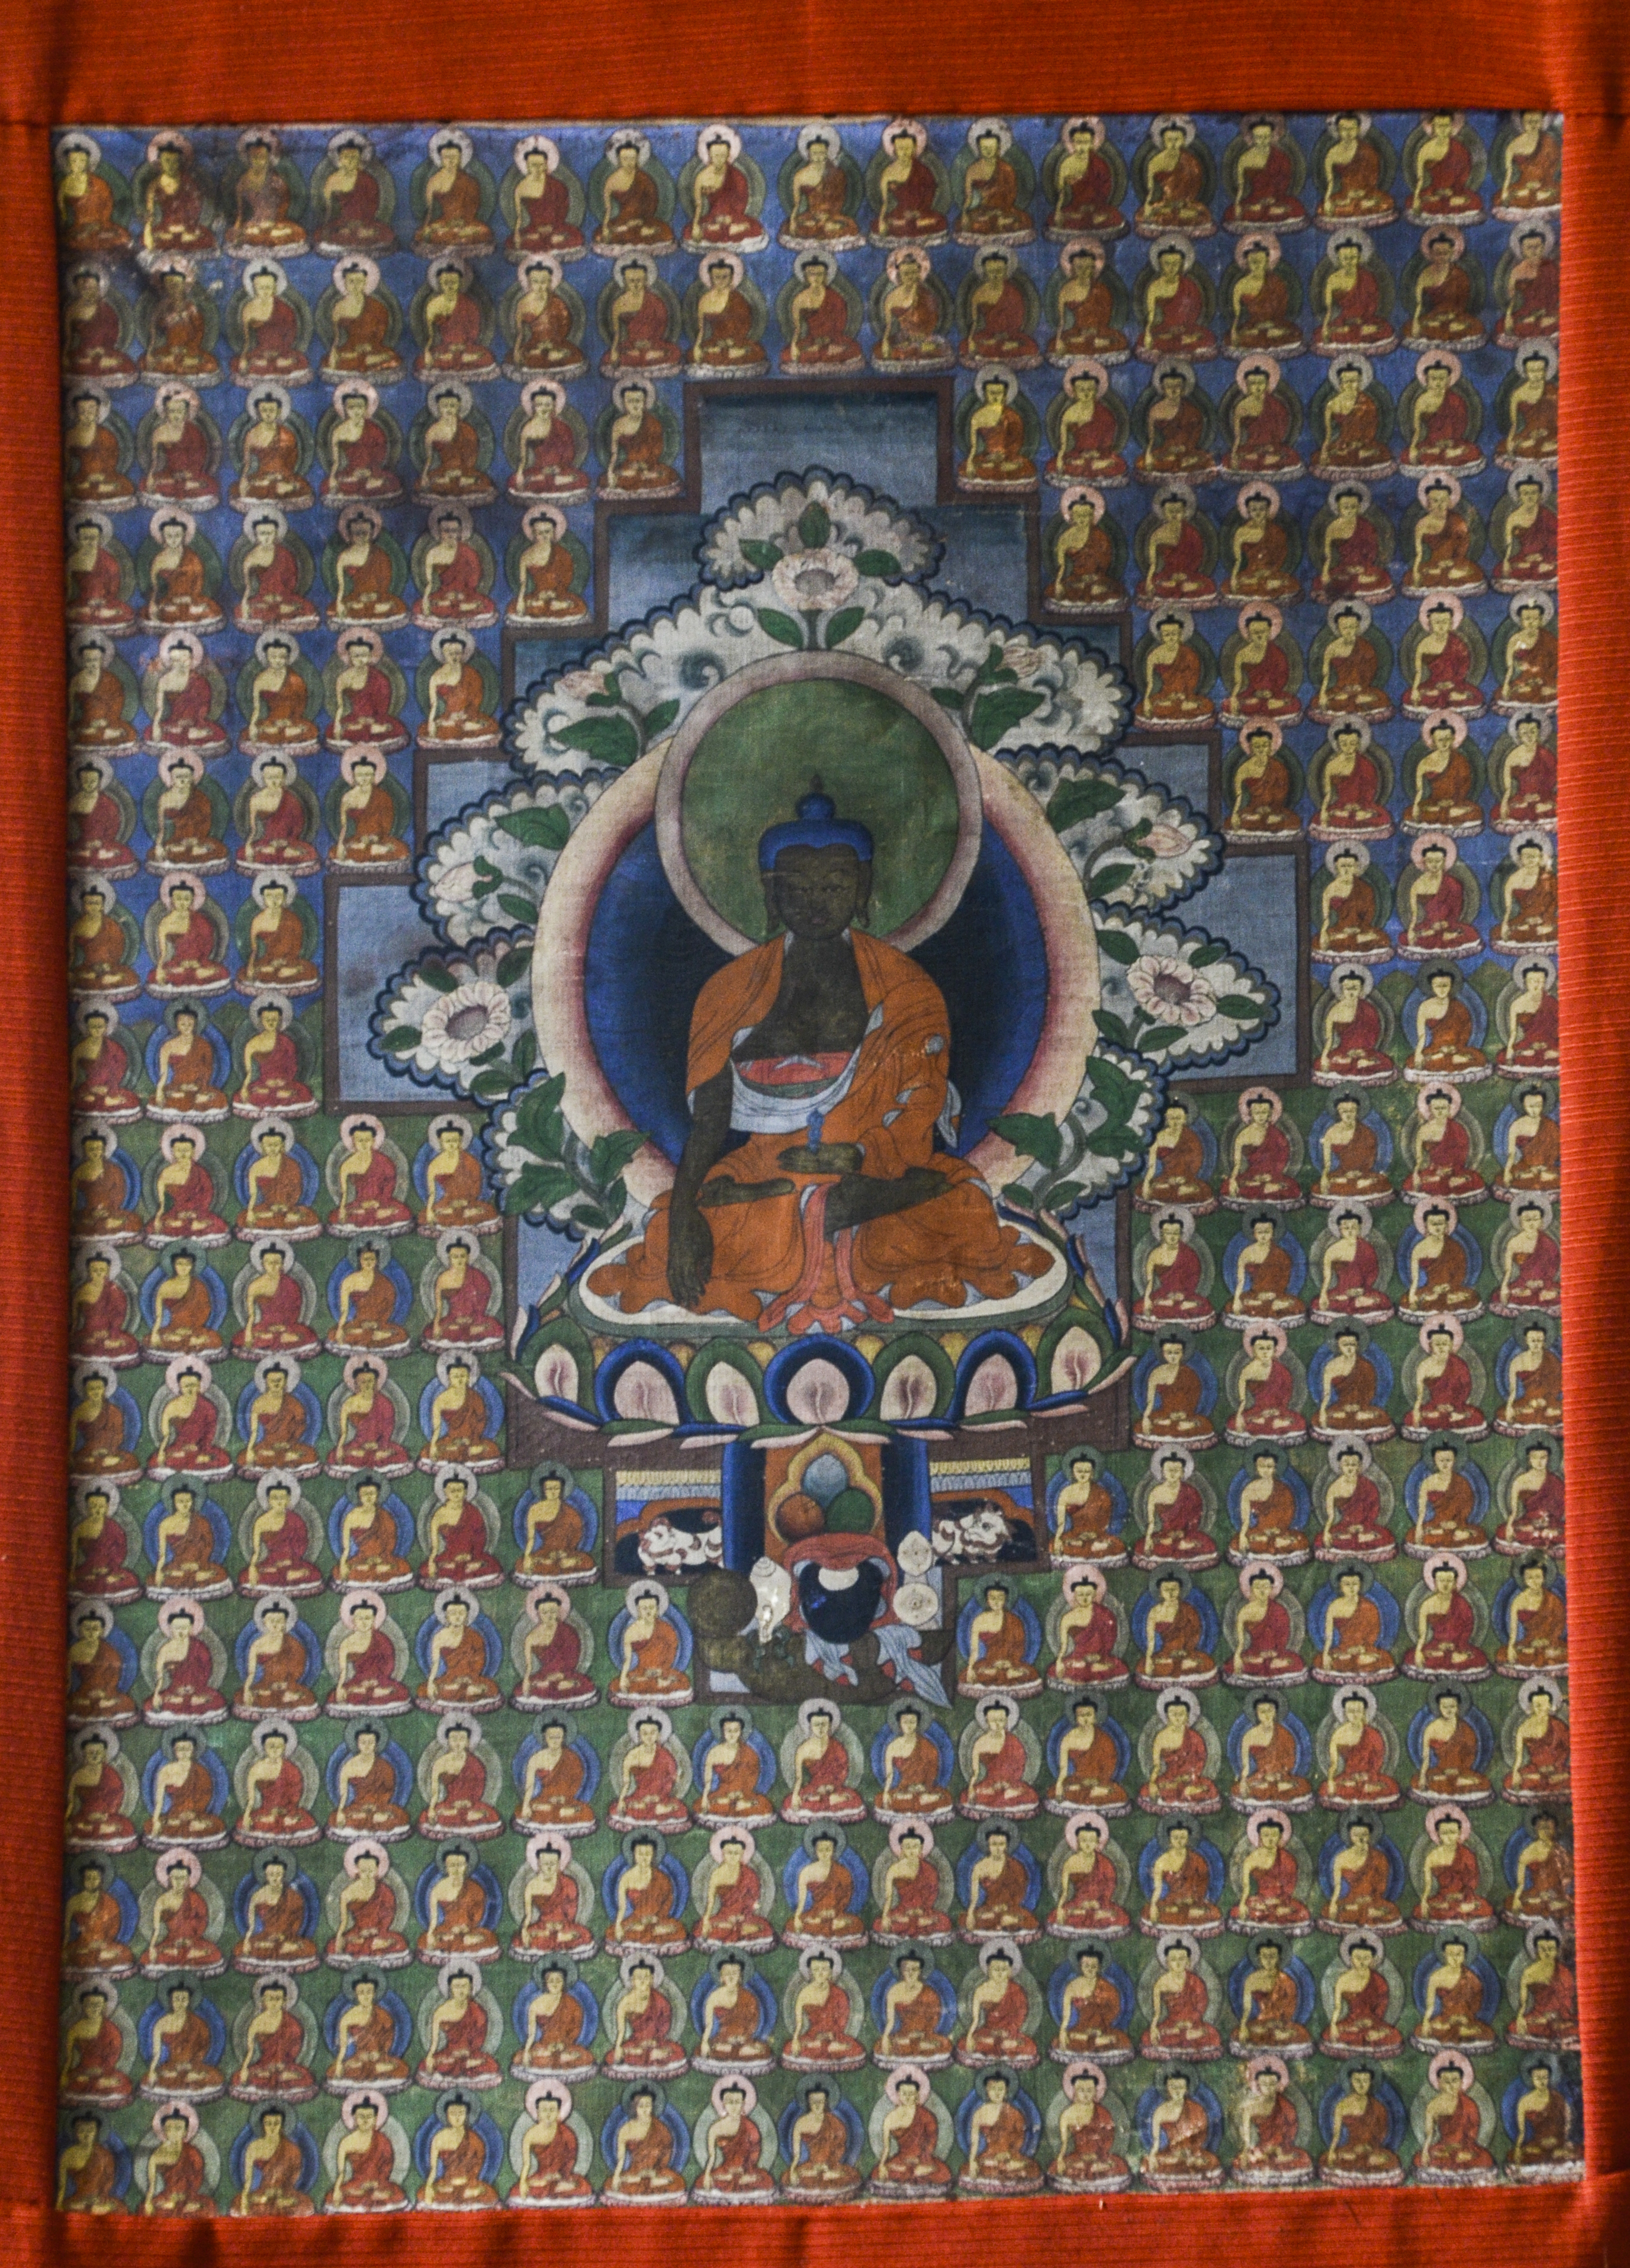 Pintura rectangular sobre tela típica de la zona de Tíbet. En el centro la figura del Buda Akṣobhya rodeado por muchas imágenes de budas más pequeños en tamaño.